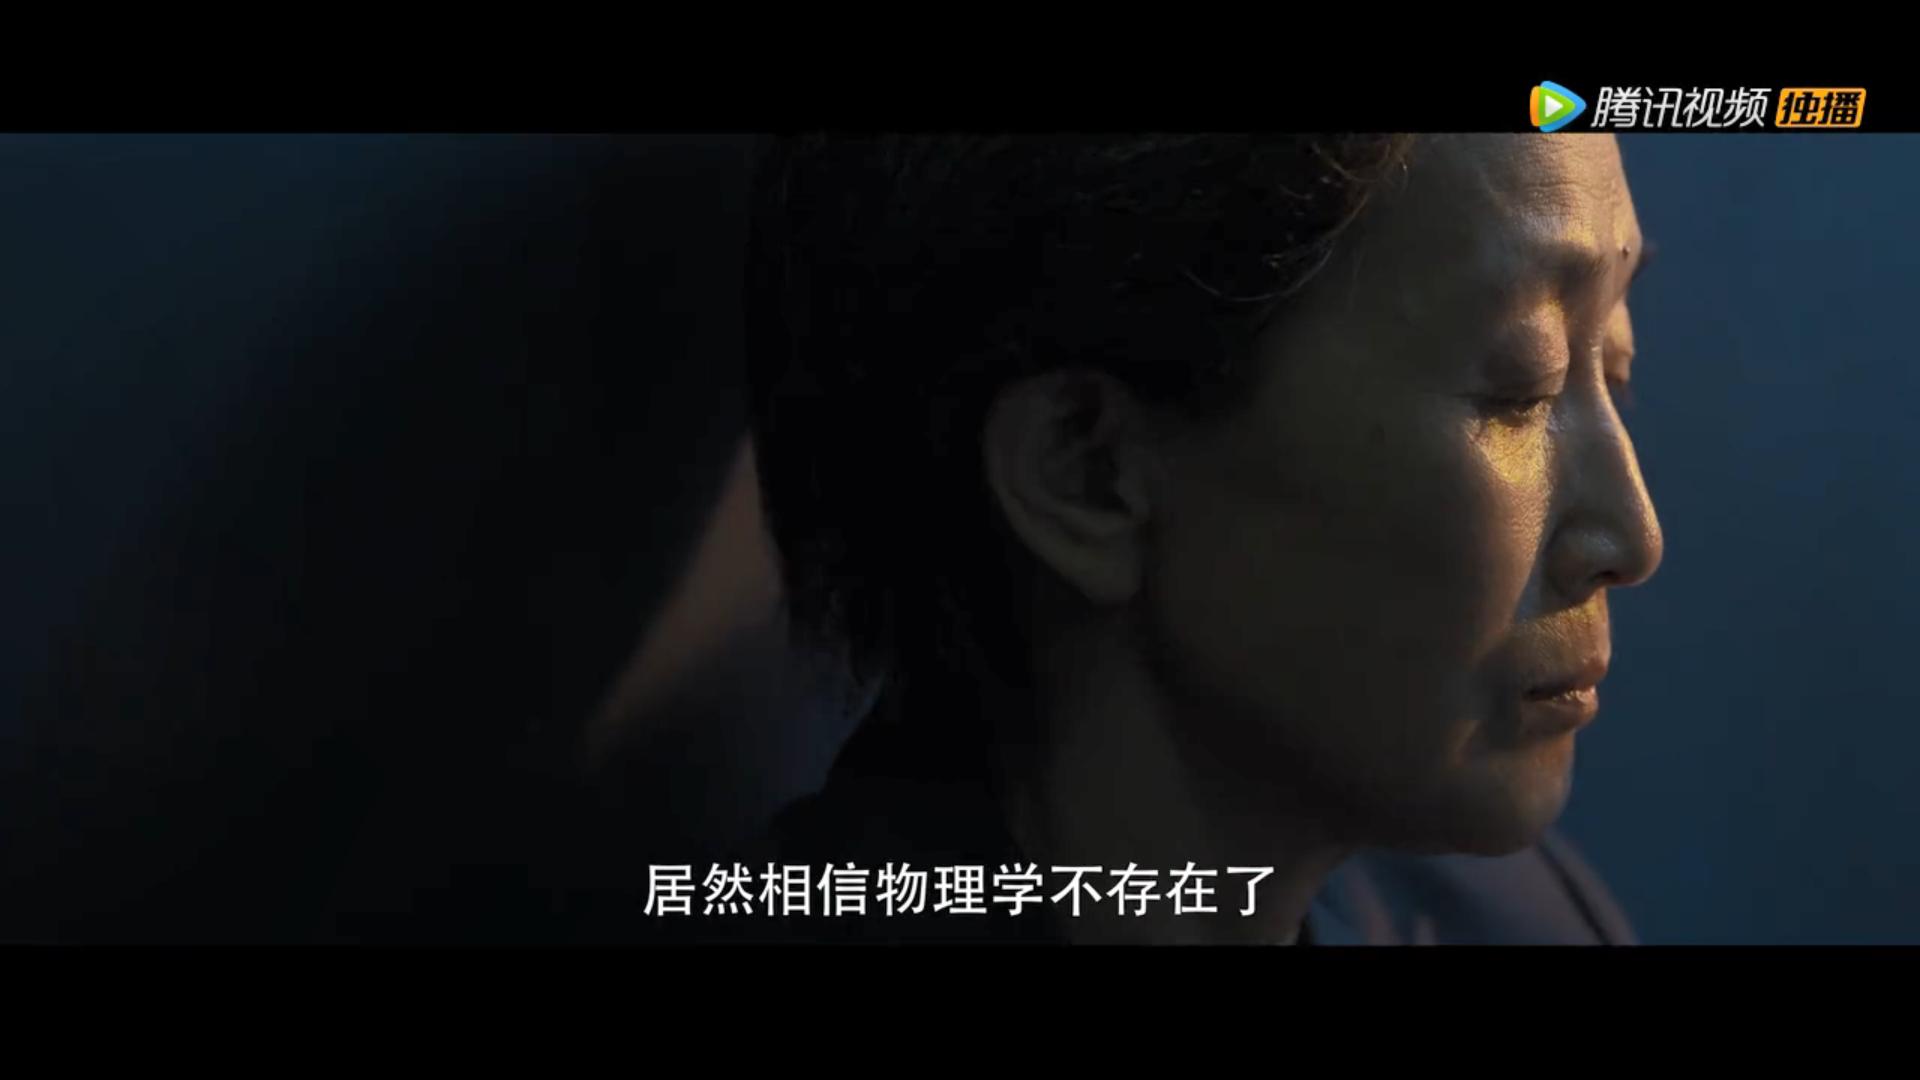 国产电视剧《三体》首爆预告 腾讯视频独播